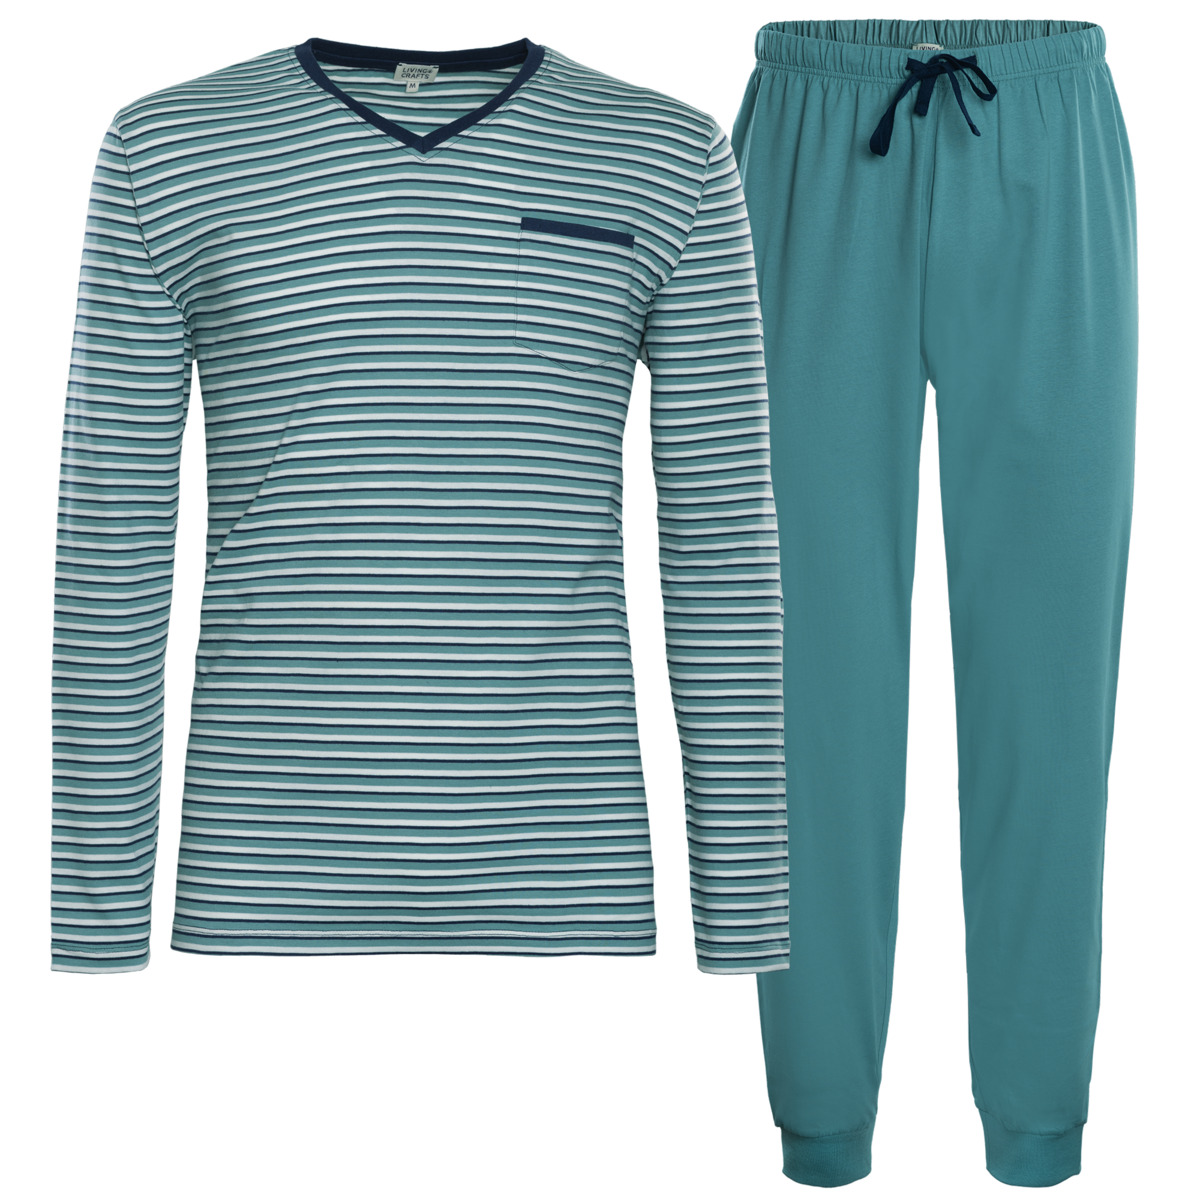 Turquoise Pyjamas, COLIN